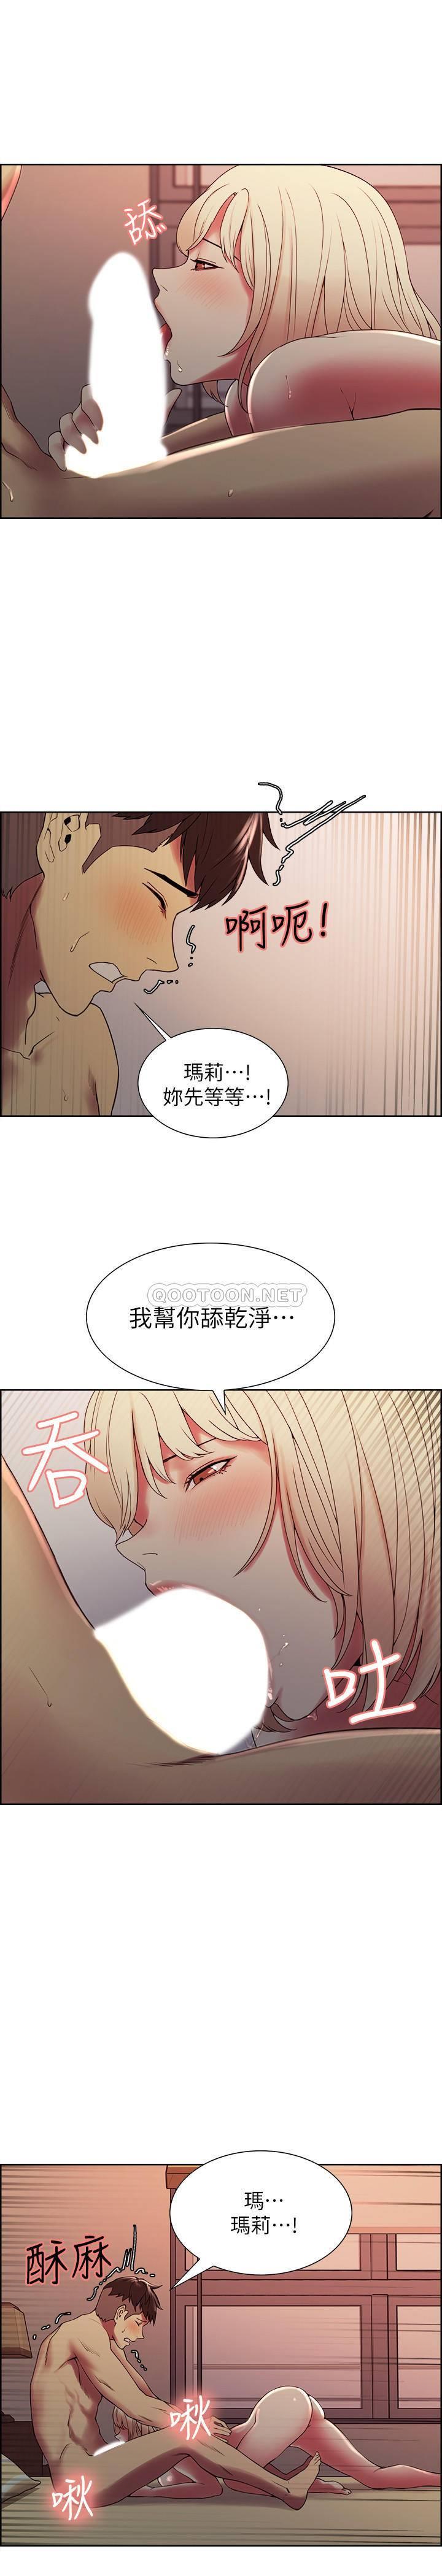 《室友招募中》漫画 第30话 - 忍无可忍的熙妍加入战局